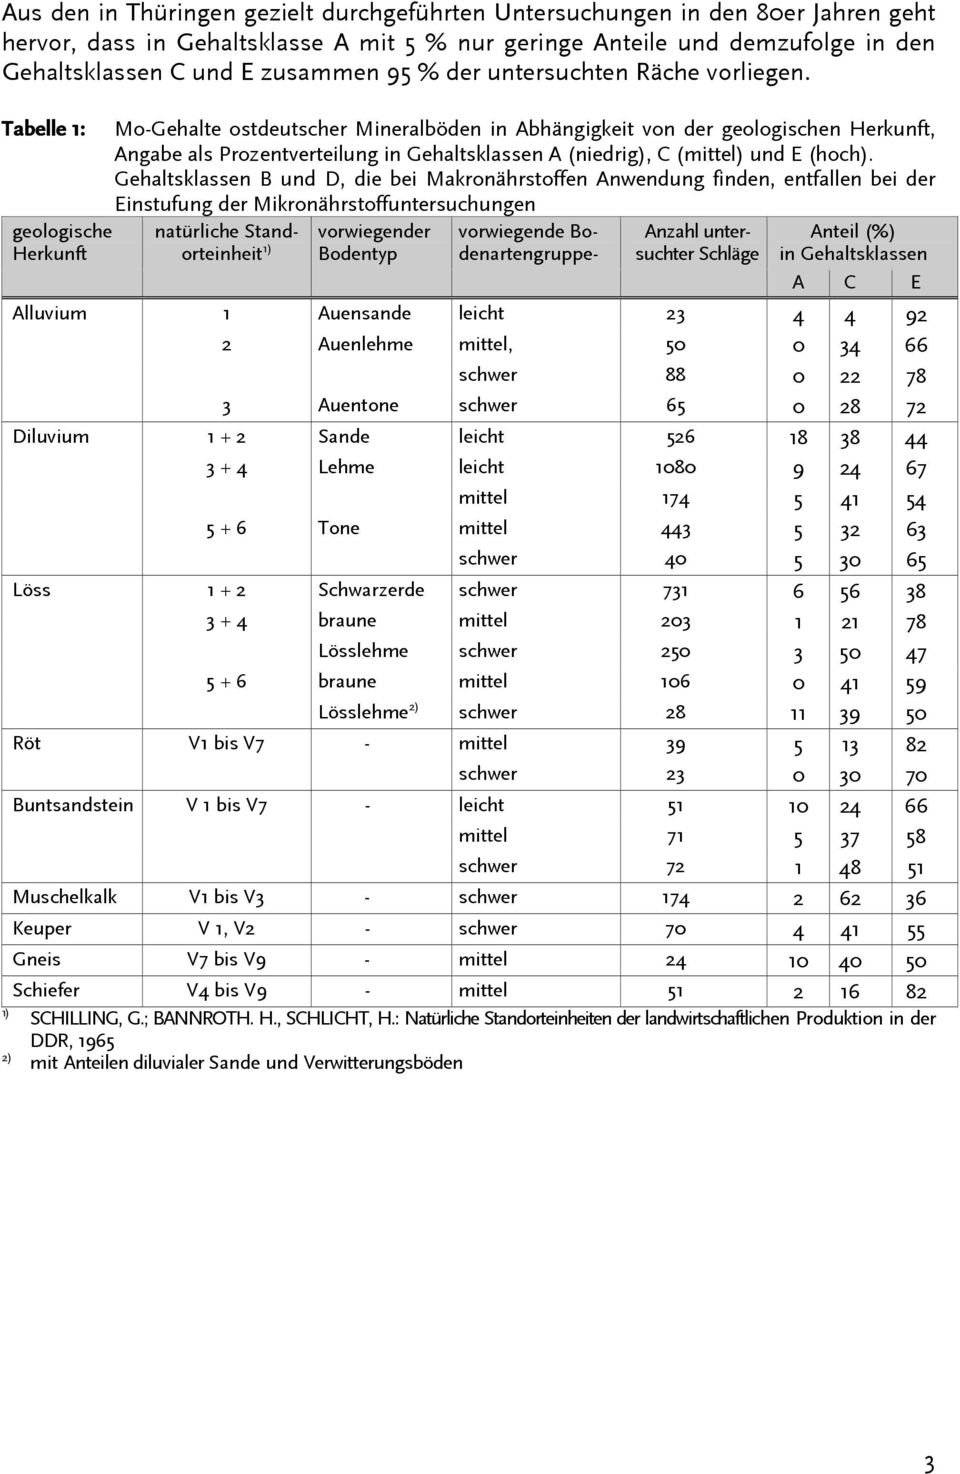 Tabelle 1: geologische Herkunft Mo-Gehalte ostdeutscher Mineralböden in Abhängigkeit von der geologischen Herkunft, Angabe als Prozentverteilung in Gehaltsklassen A (niedrig), C (mittel) und E (hoch).